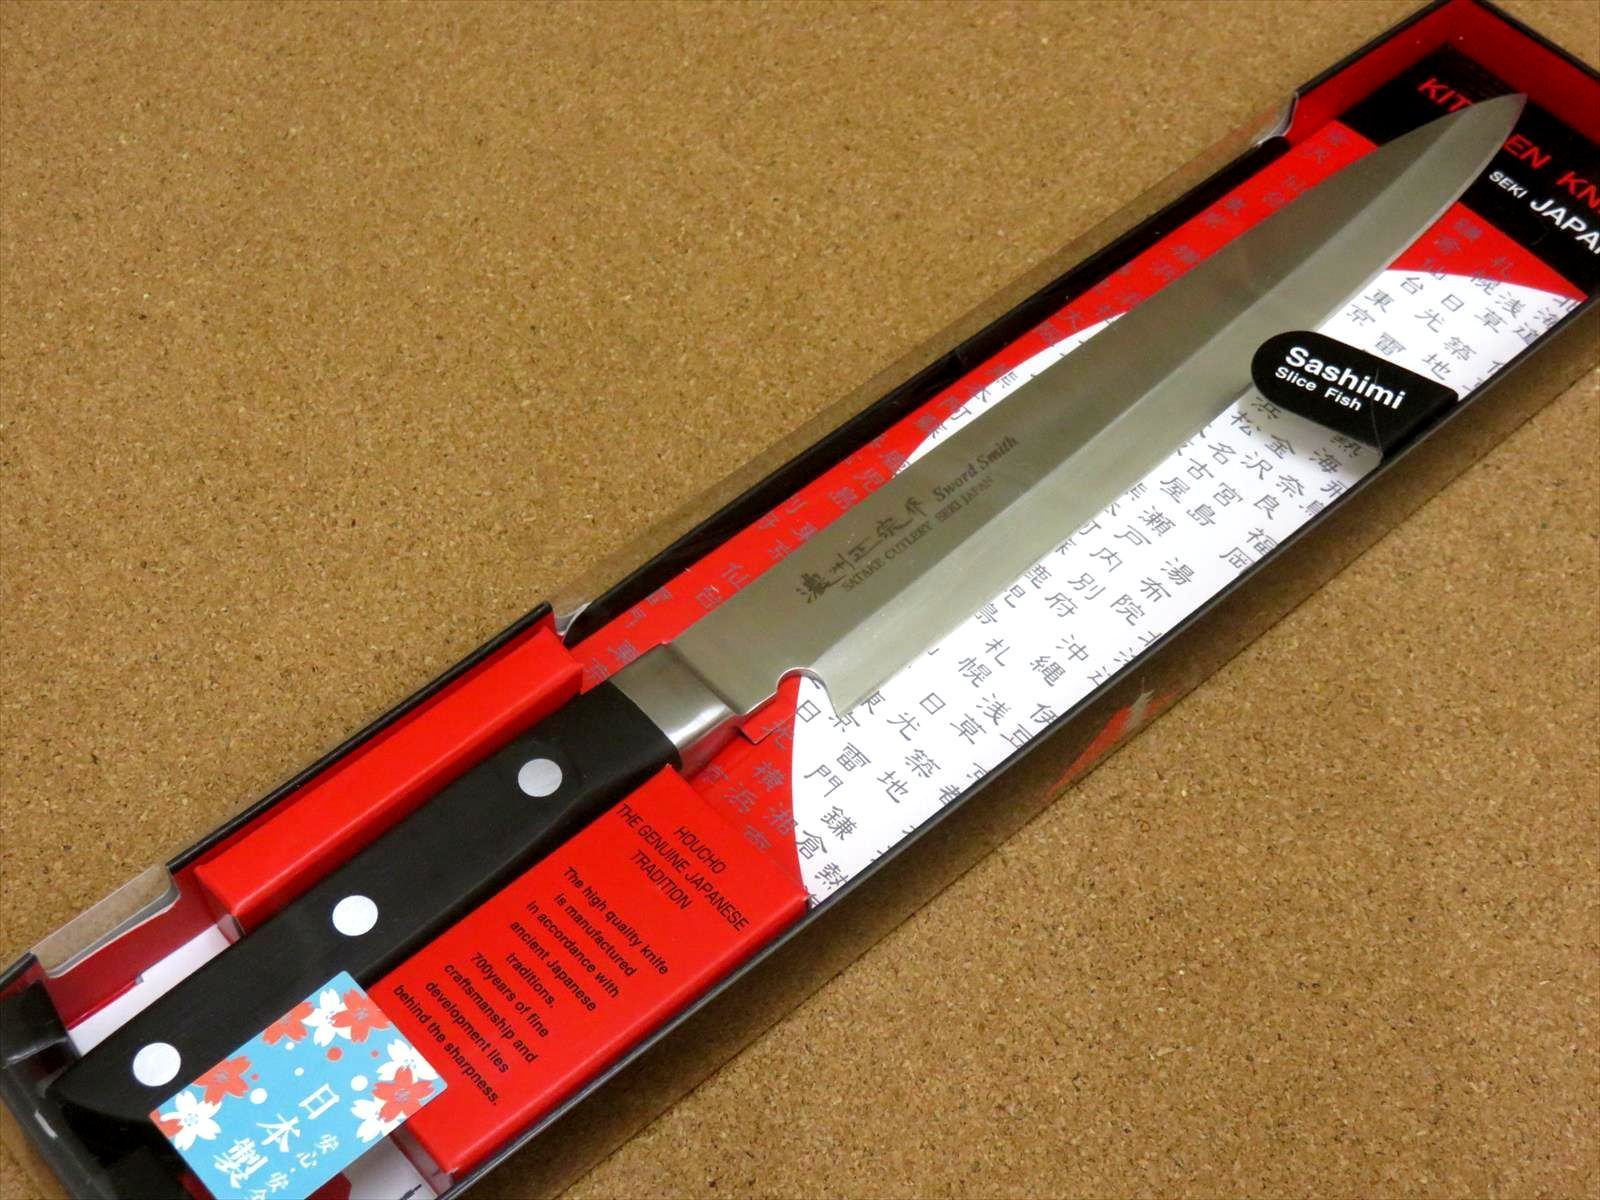 関の刃物 刺身包丁 20.5cm (205mm) 濃州正宗作 ステンレス鋼 ABS樹脂 本通し 片刃 右利き 刺身を切る 刃渡りが長い 柳葉包丁 日本製  - メルカリ